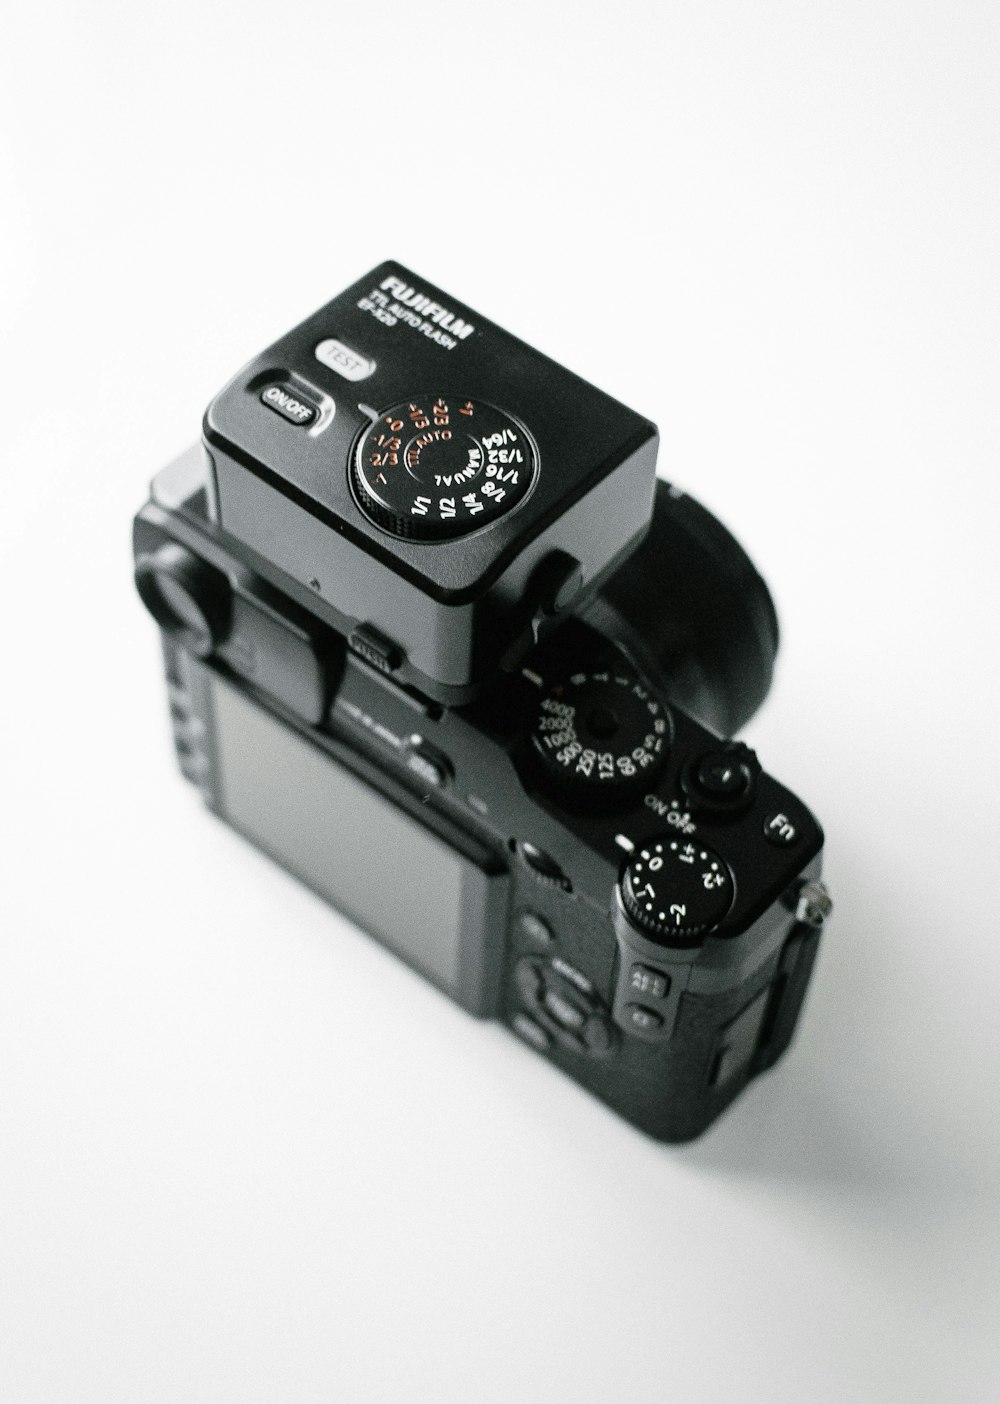 黒の富士フイルムデジタル一眼レフカメラ